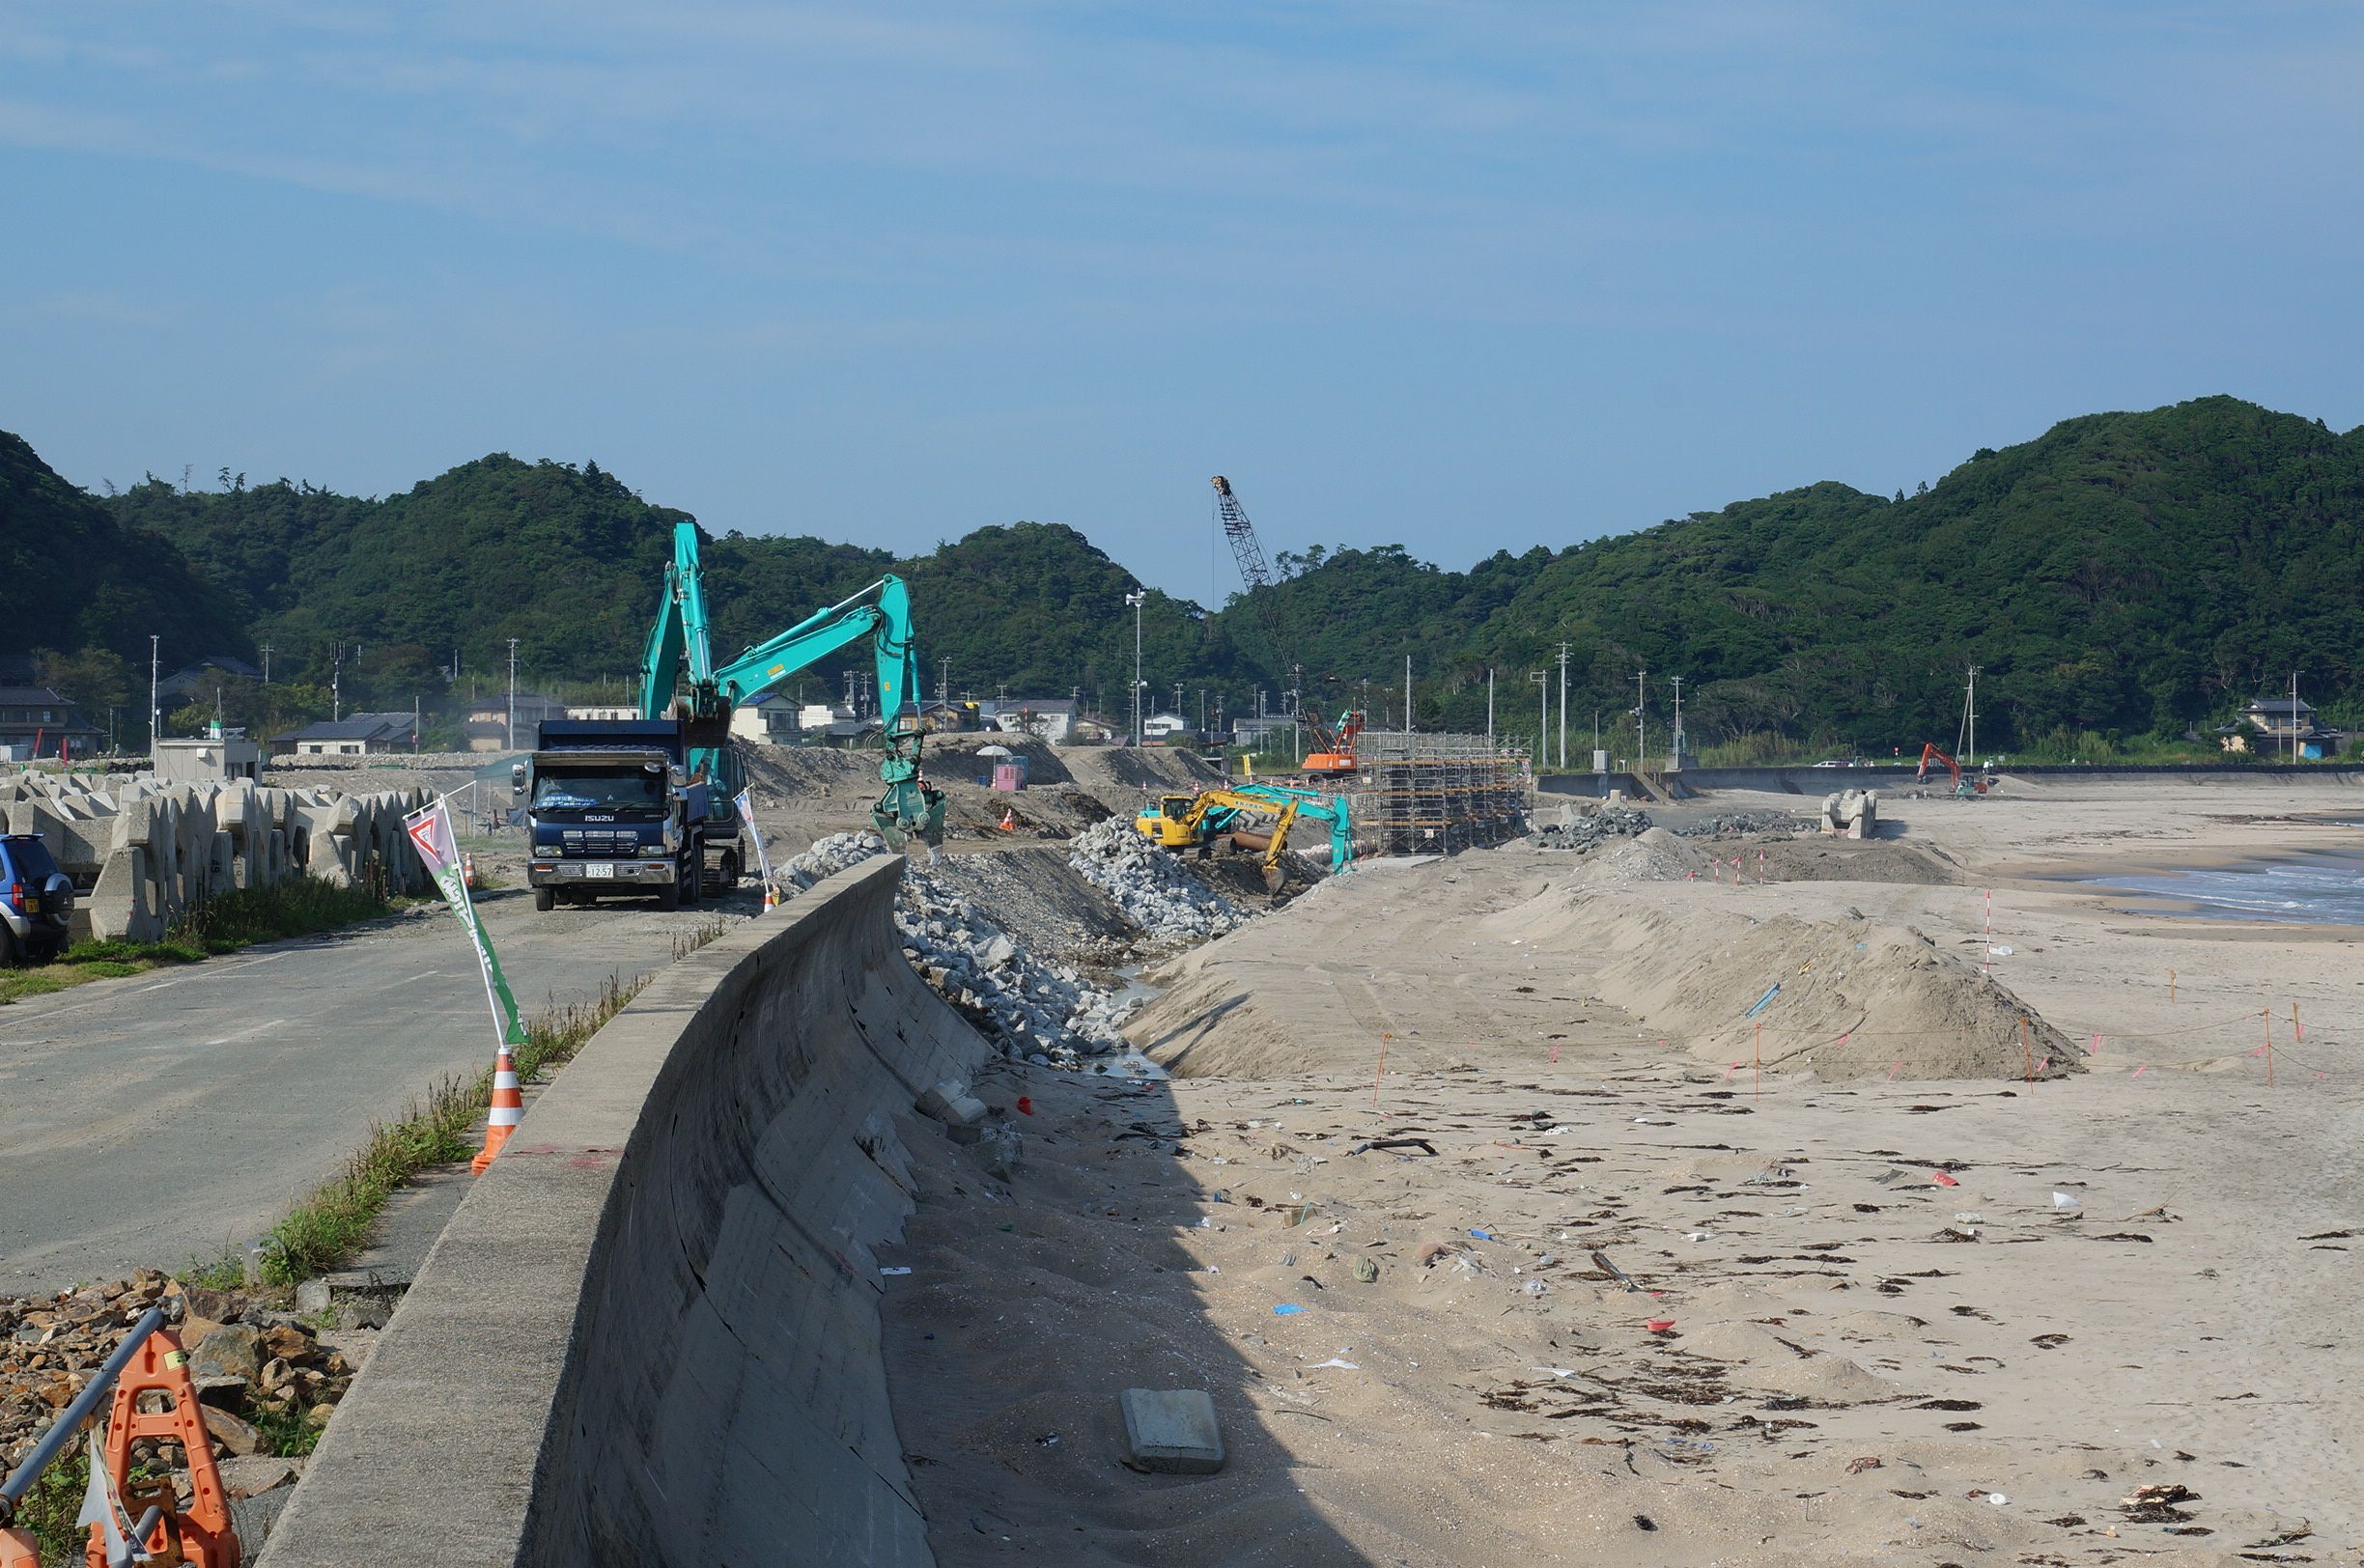 15 防潮堤かさ上げ工事(平成26年8月、いわきジャーナル撮影)